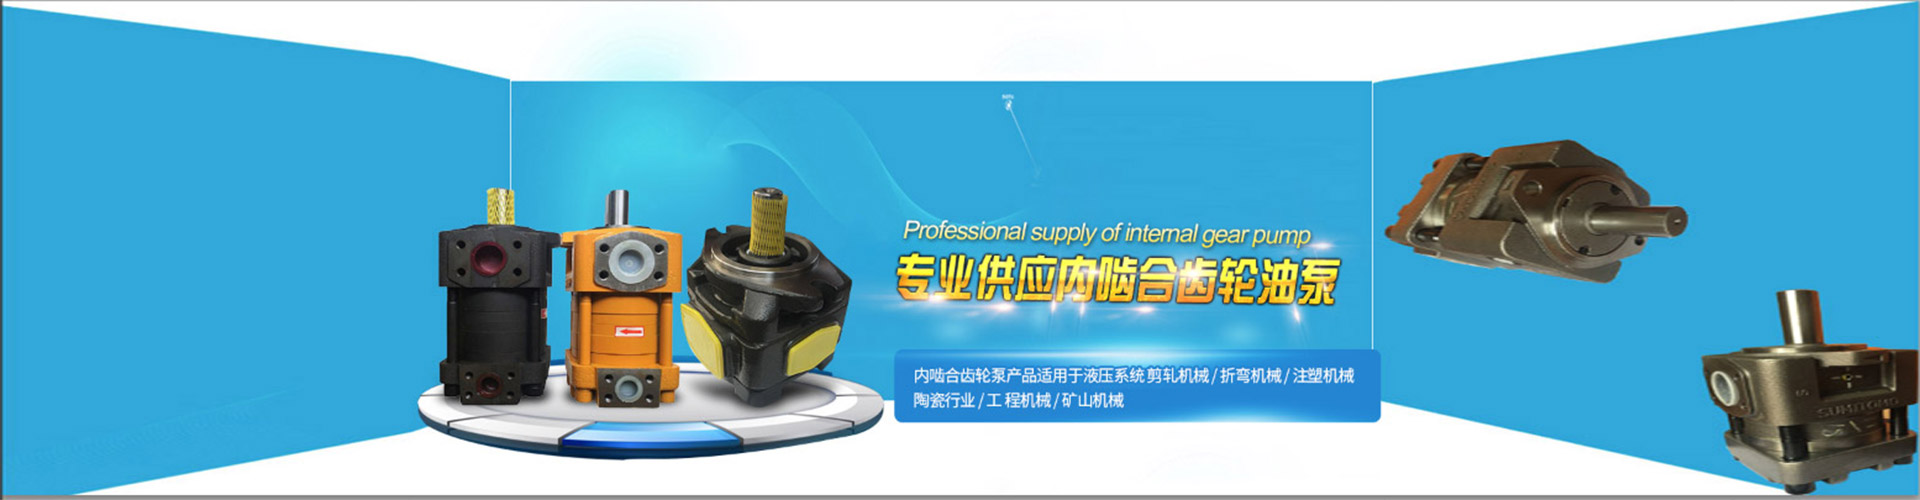 尚志市上海域昊NT2-G16F齿轮泵促销